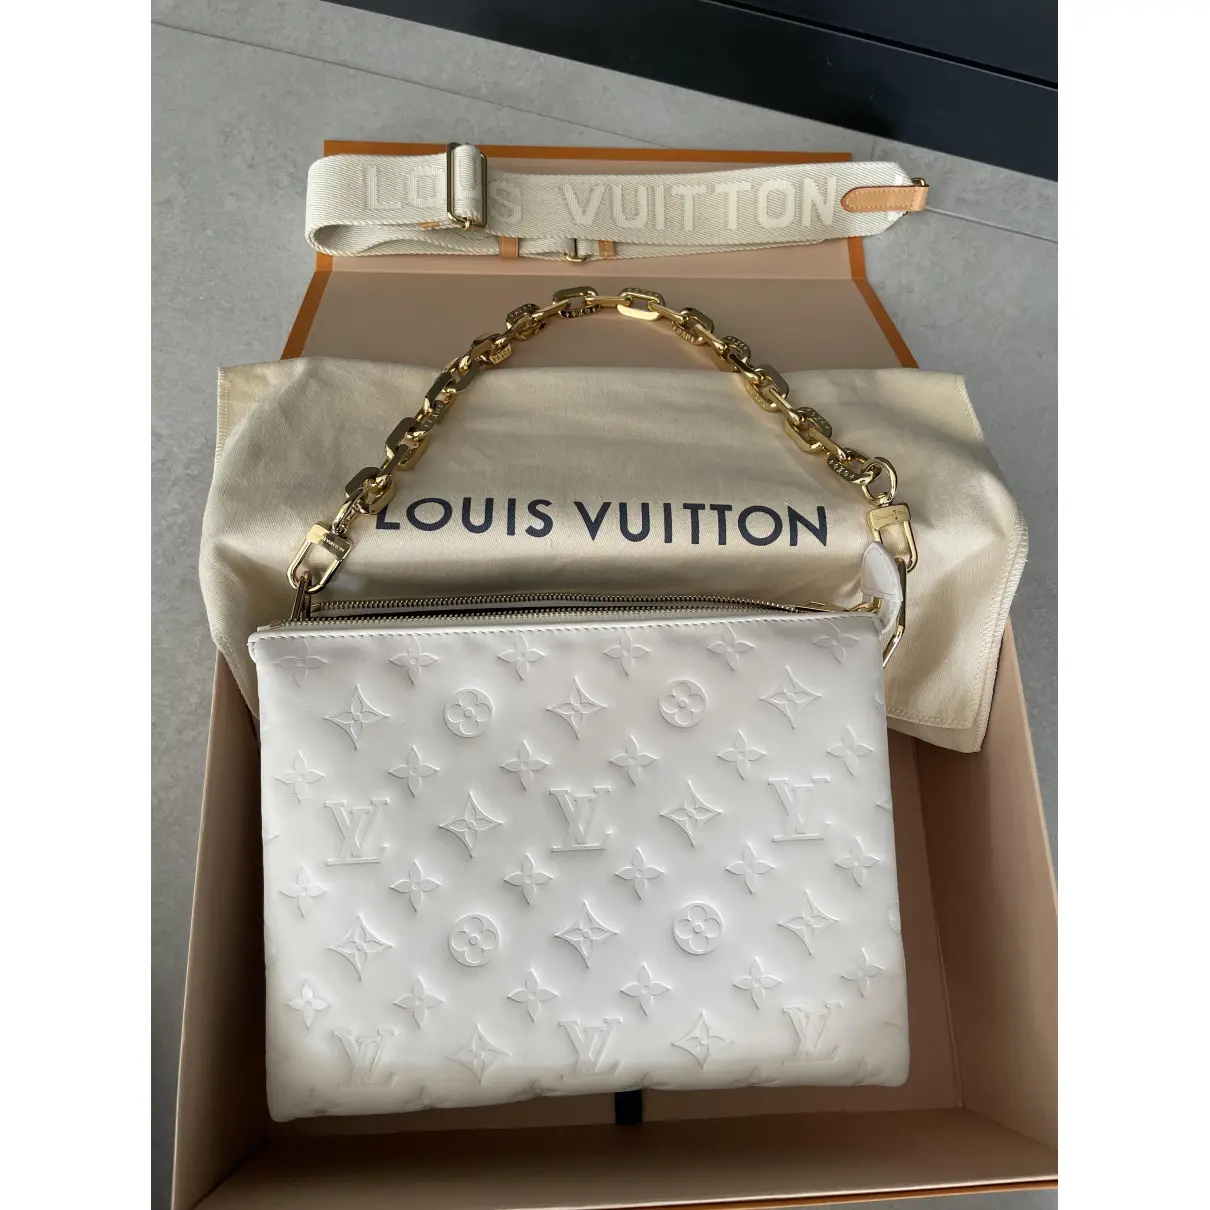 Buy Louis Vuitton Coussin leather handbag online